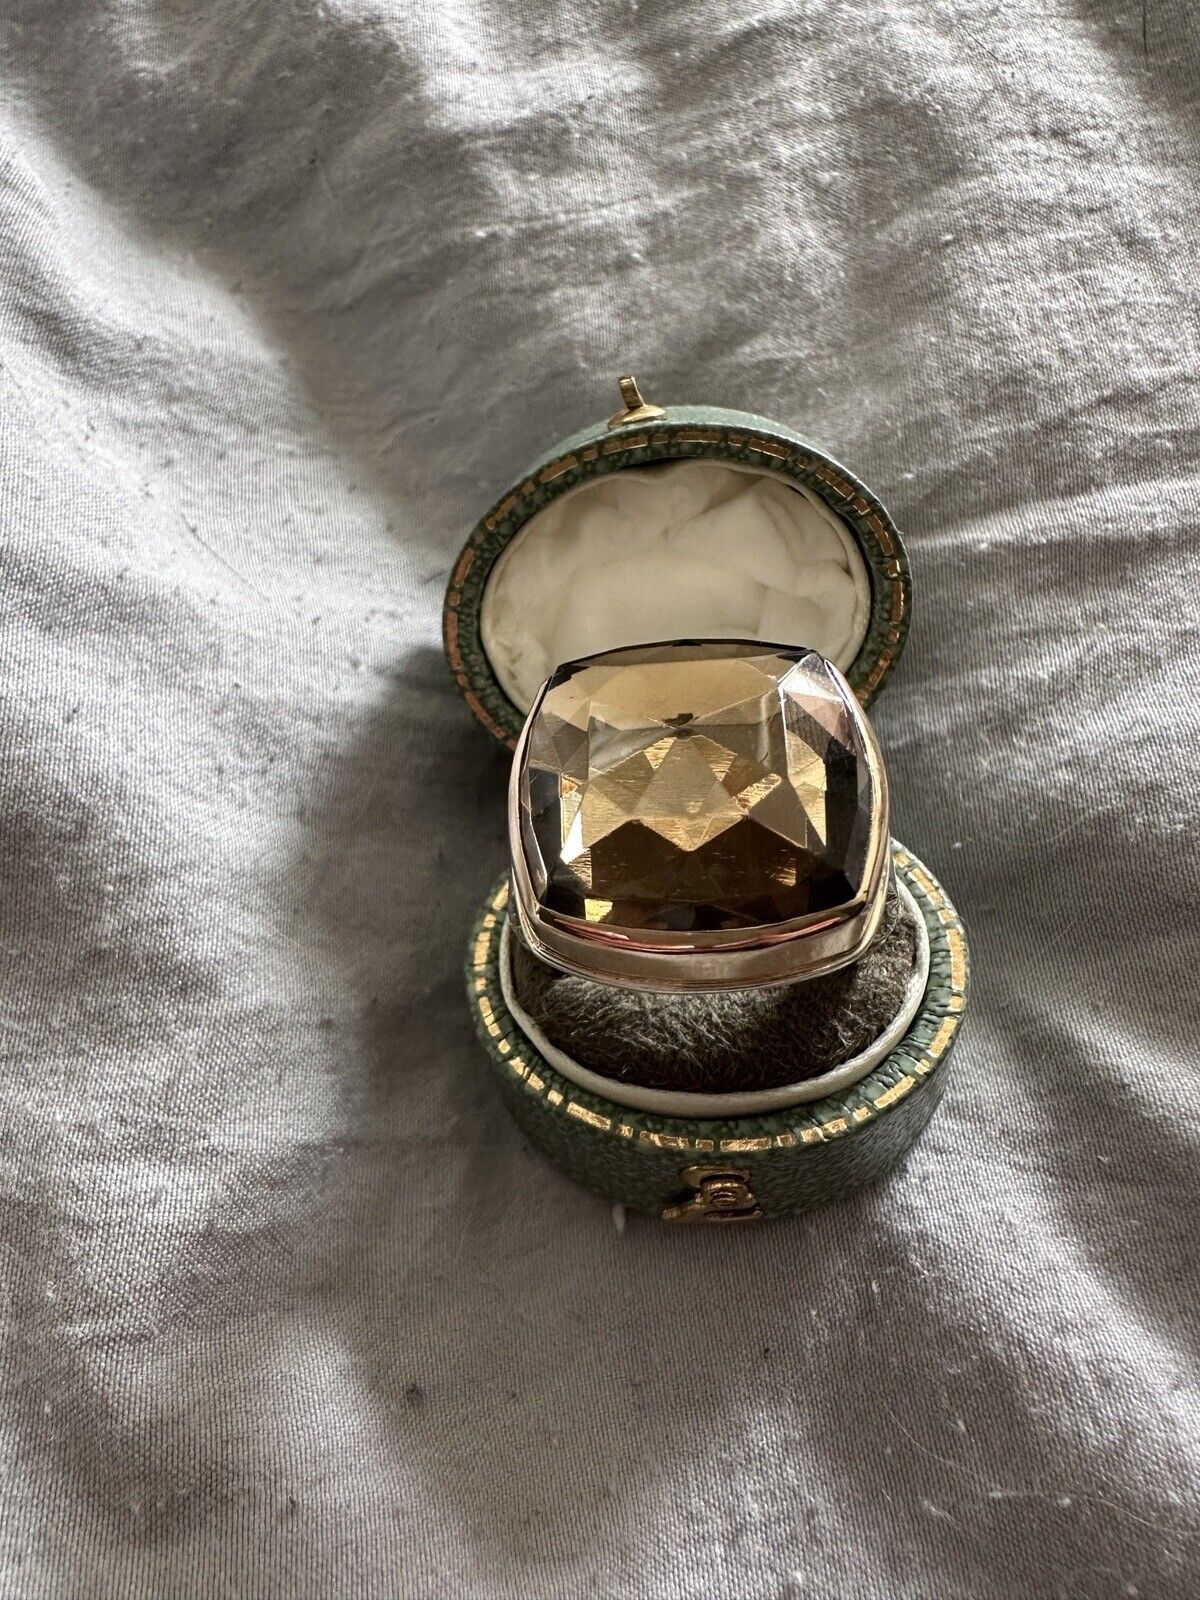 Beautiful Jamie Joseph Smoky Quartz Ring - Size 9 - image 2